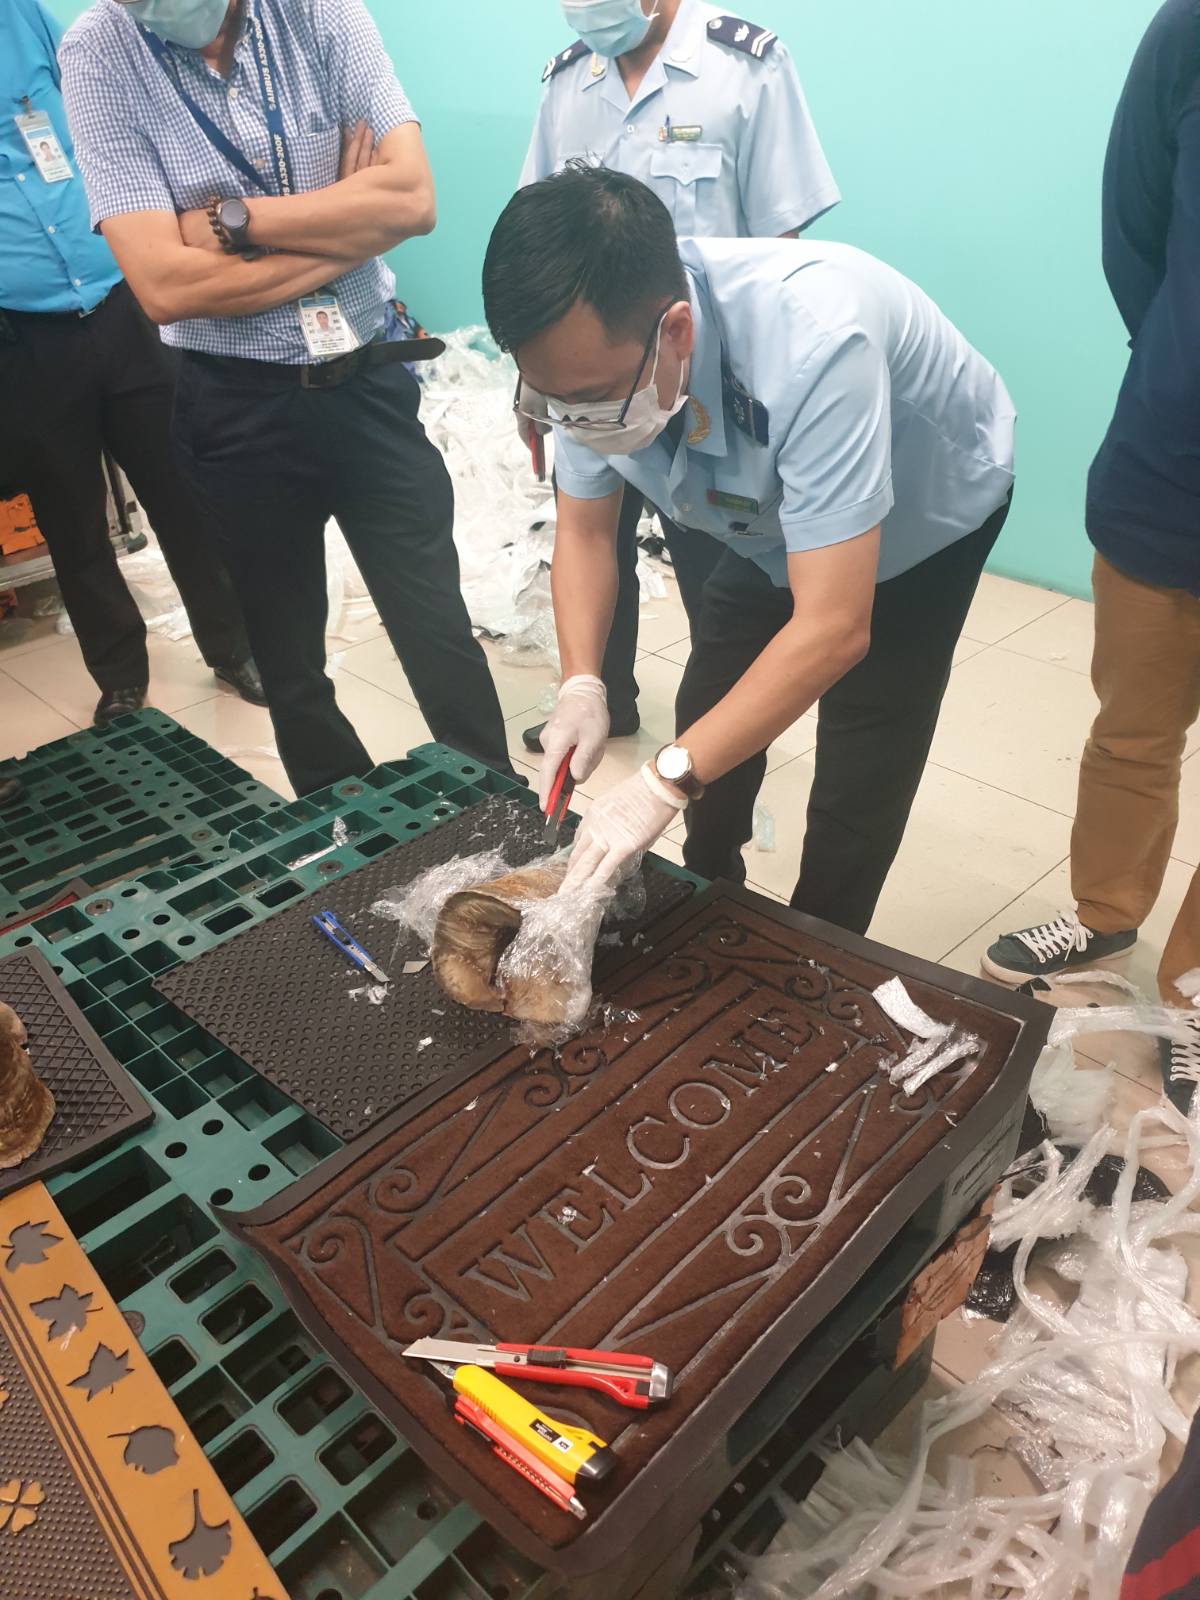 Hé lộ công ty đứng sau gần 100 kg nghi sừng tê giác ở khu vực sân bay Tân Sơn Nhất - Ảnh 6.